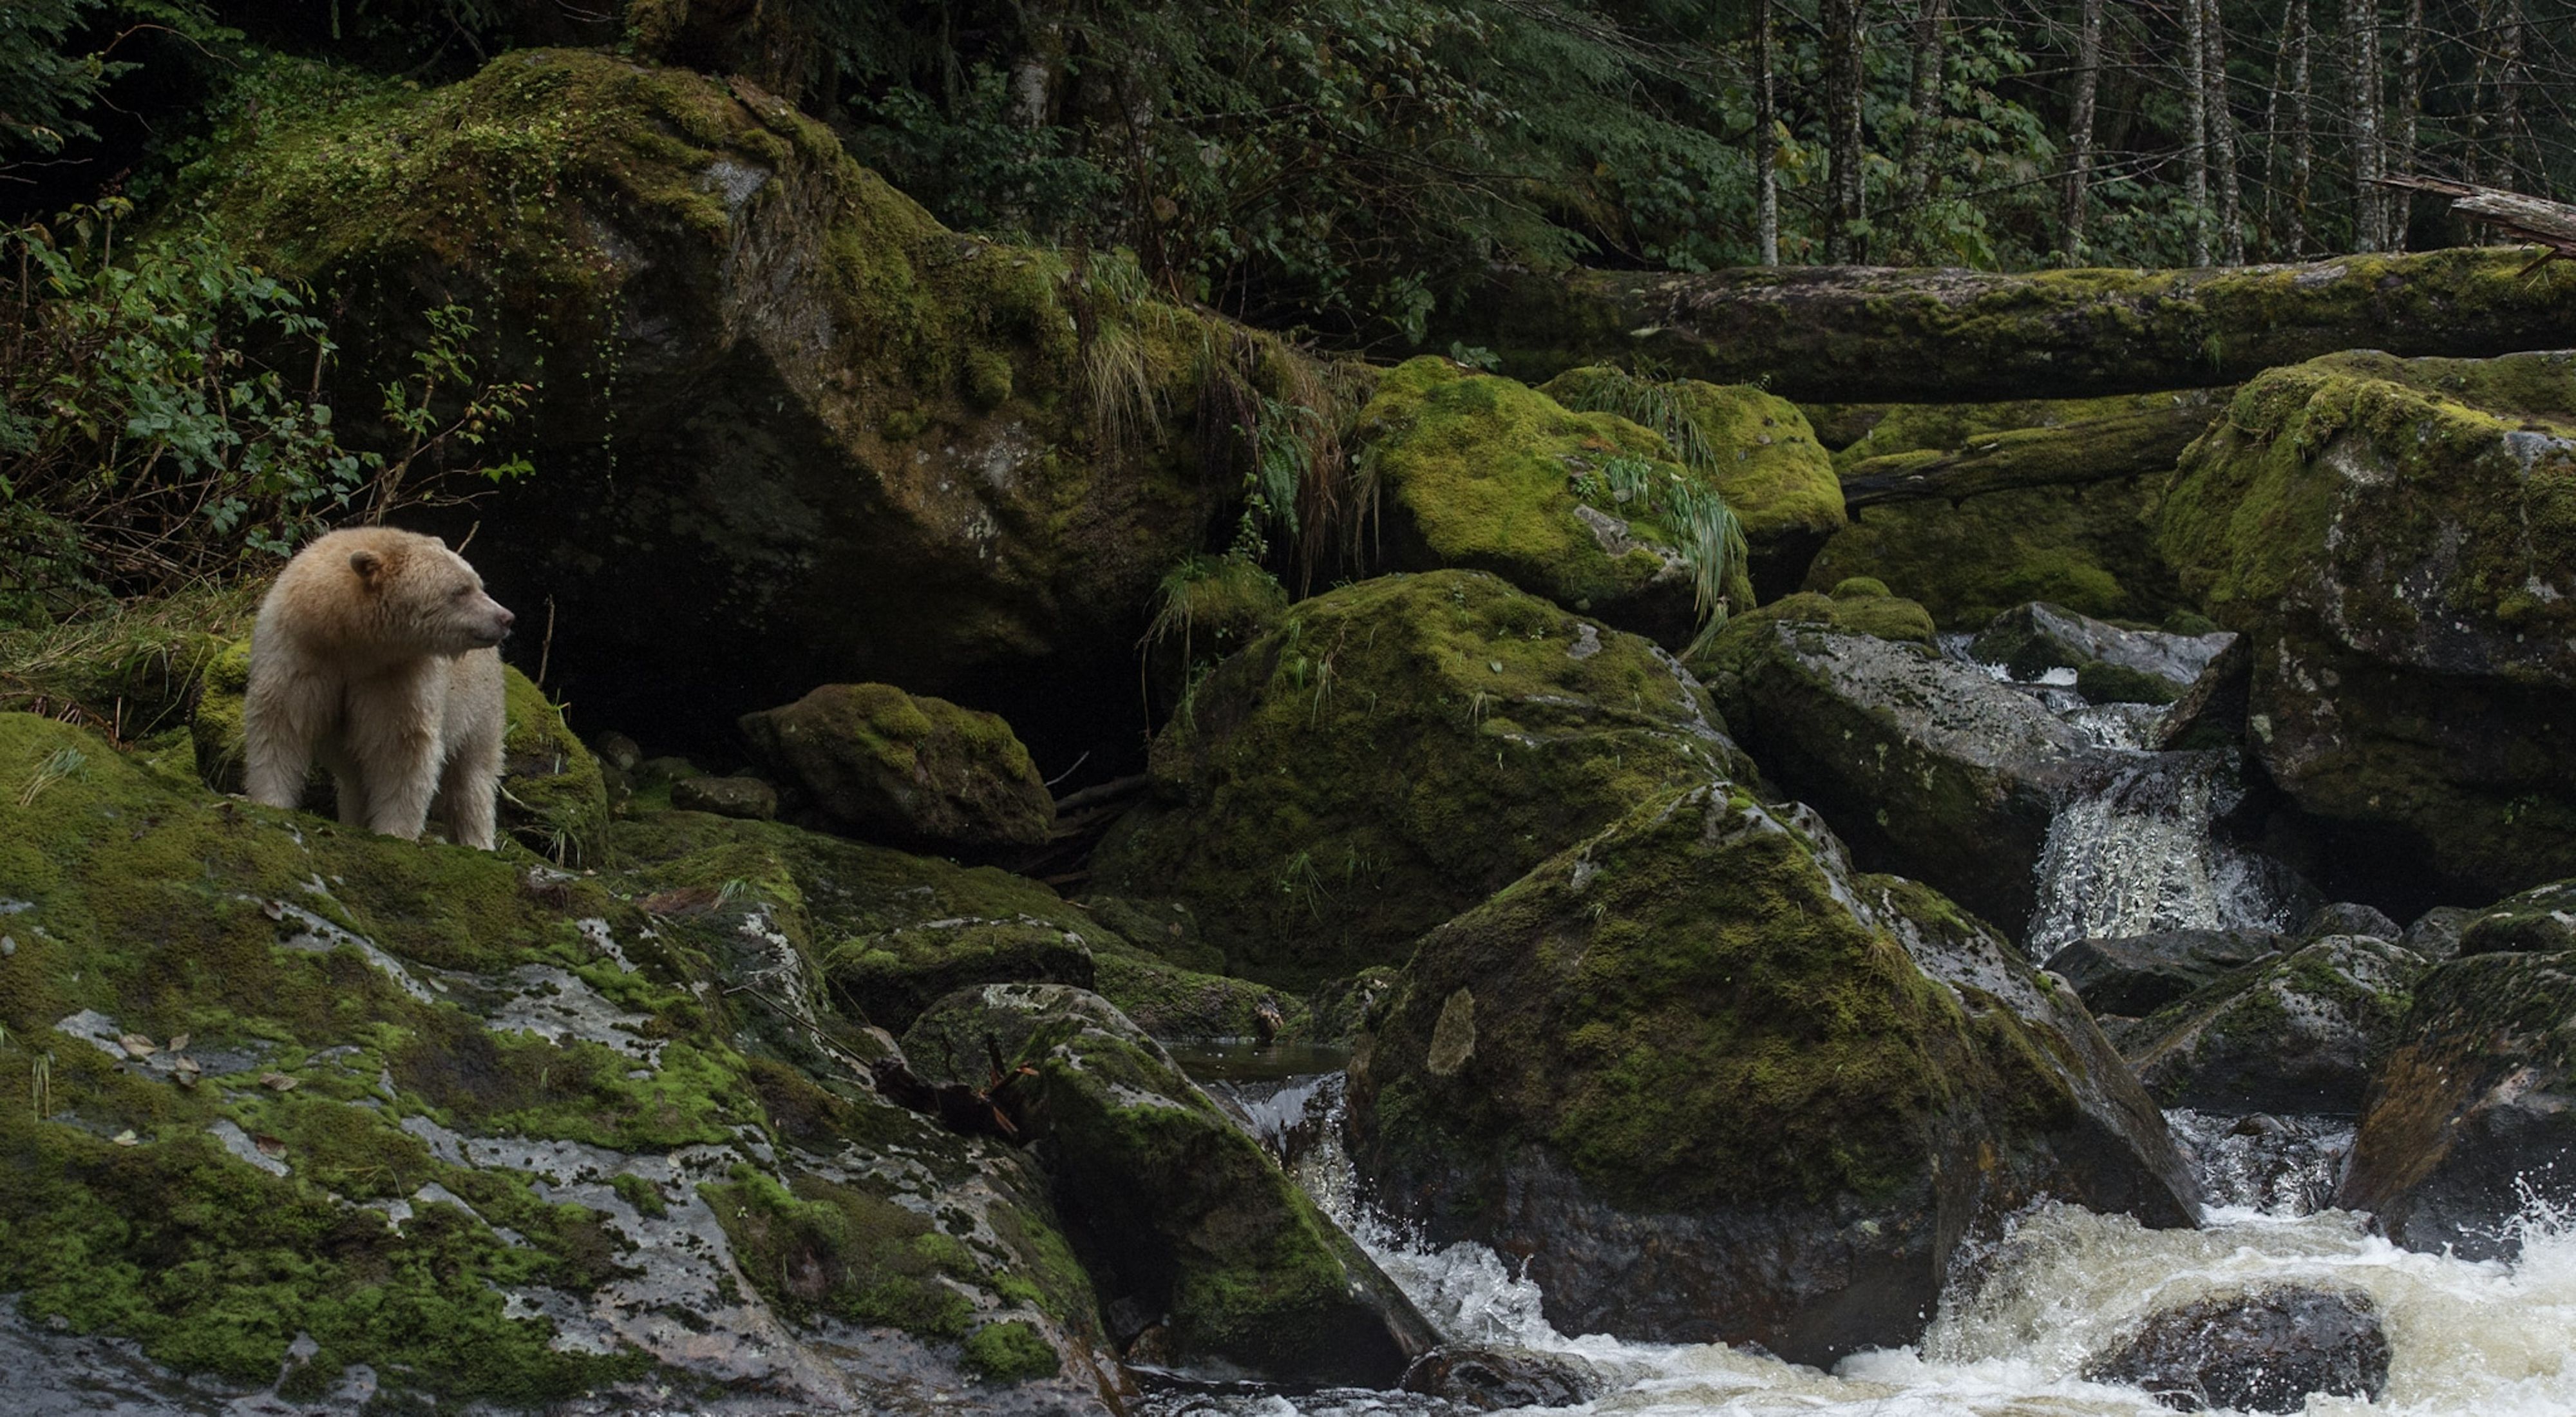 A rare kermode spirit bear climbs on moss-covered rocks in the Great Bear Rainforest.